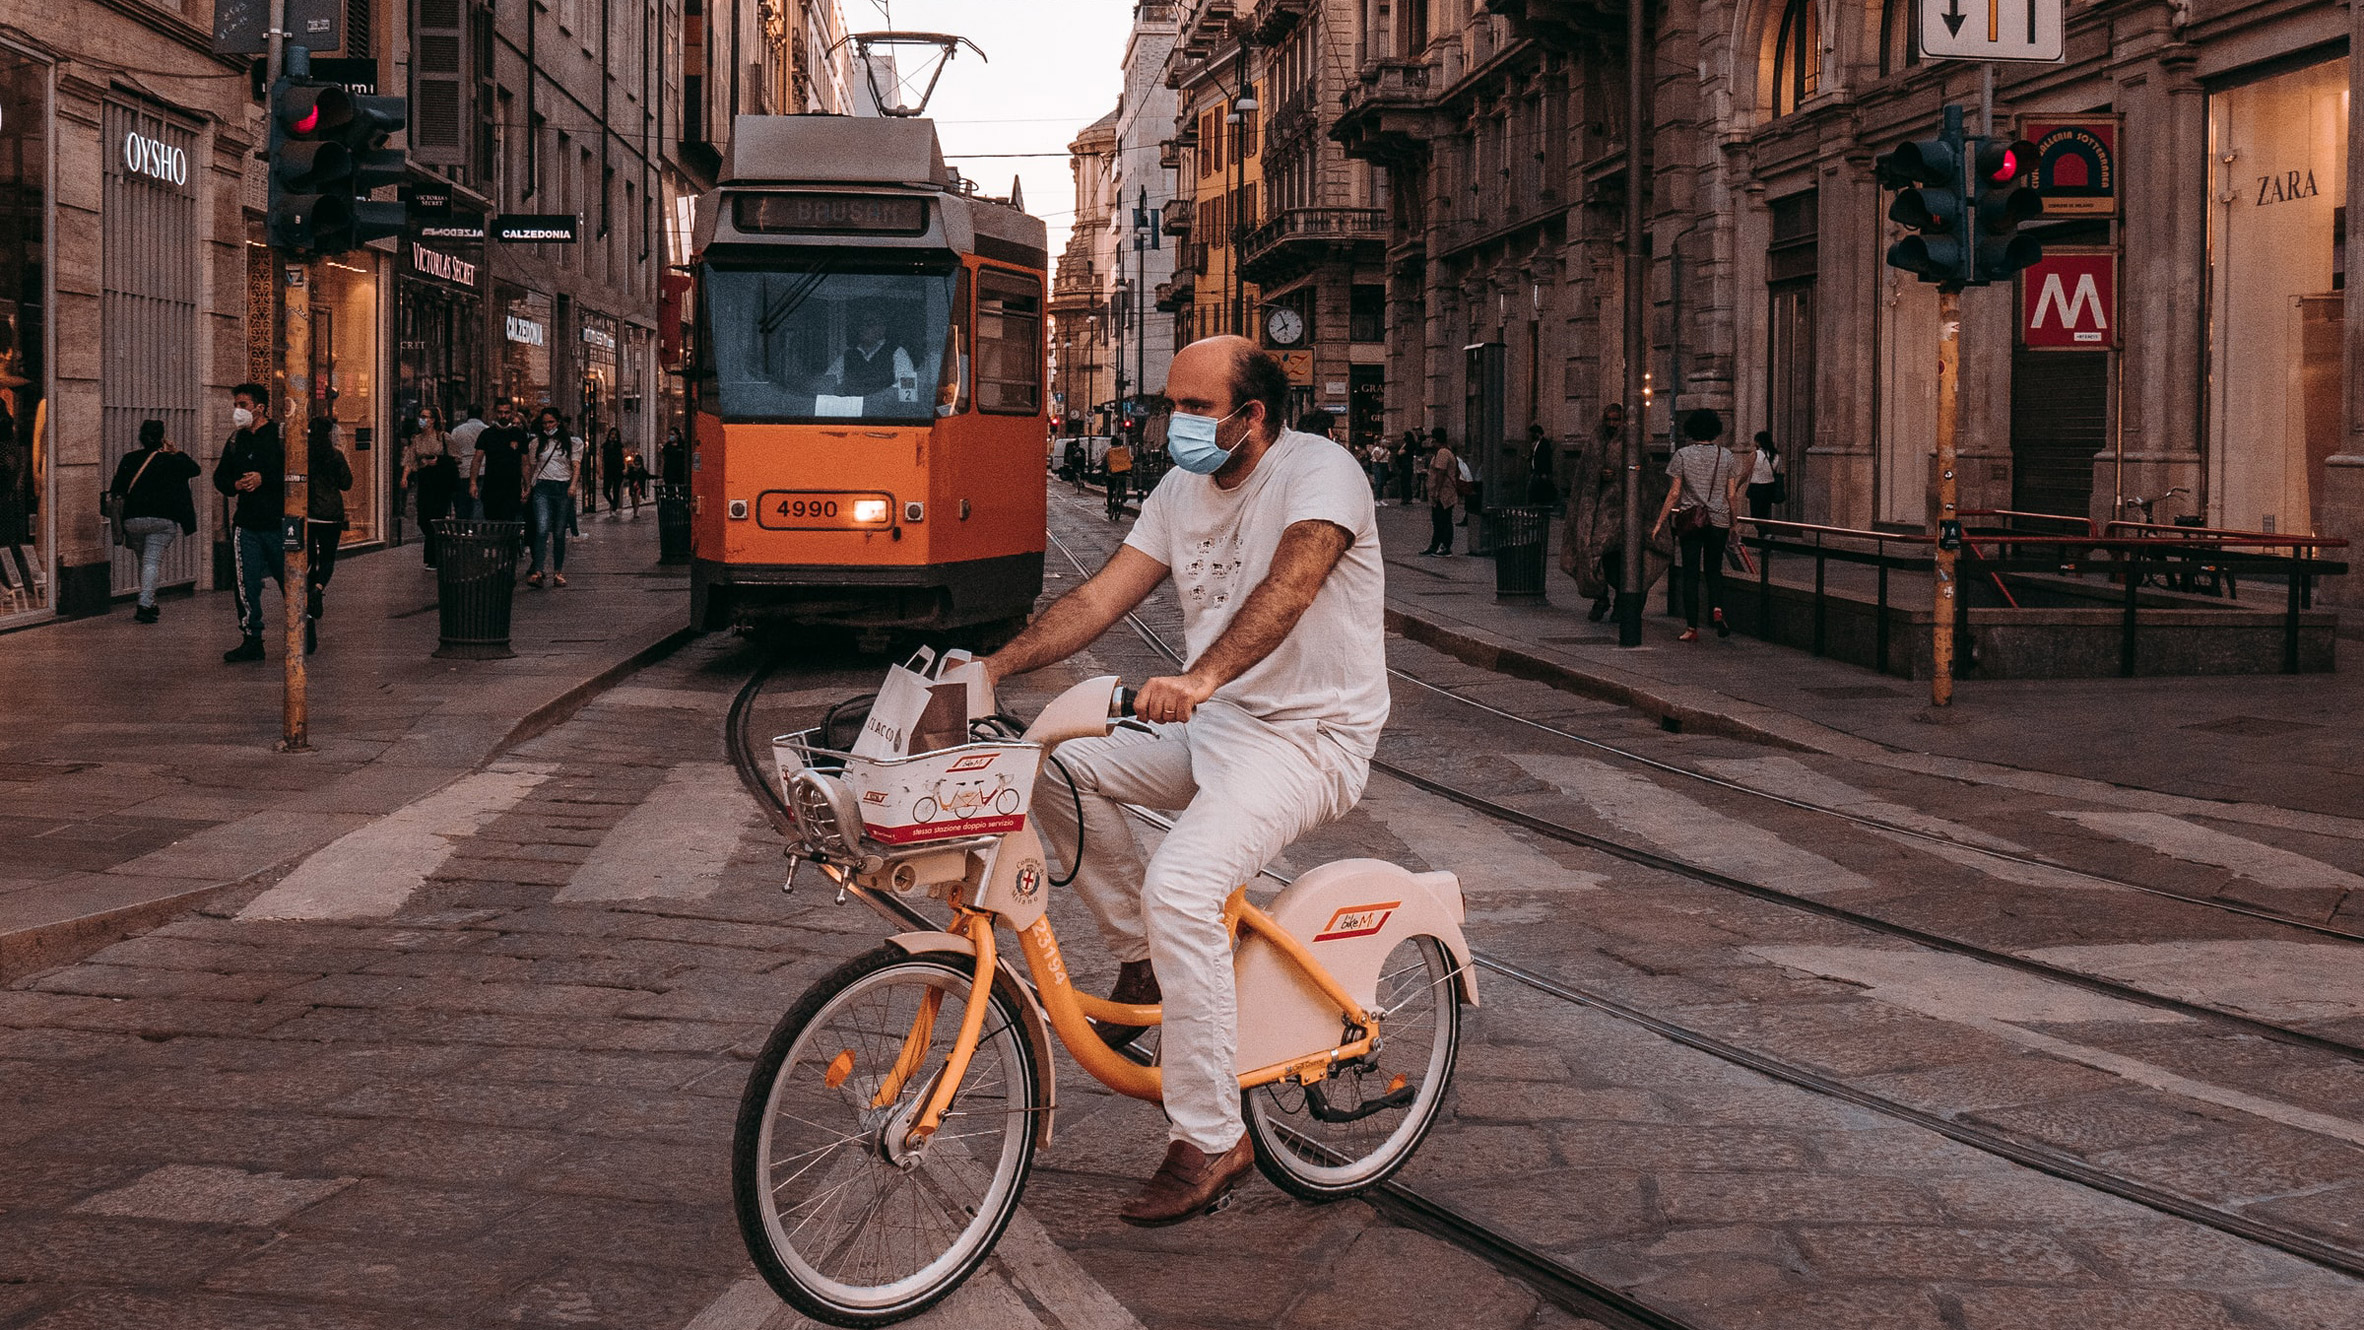 Hombre montando en bicicleta frente a un tranvía en Milán, ilustrando una noticia sobre la red ciclista Cambio planificada en Milán